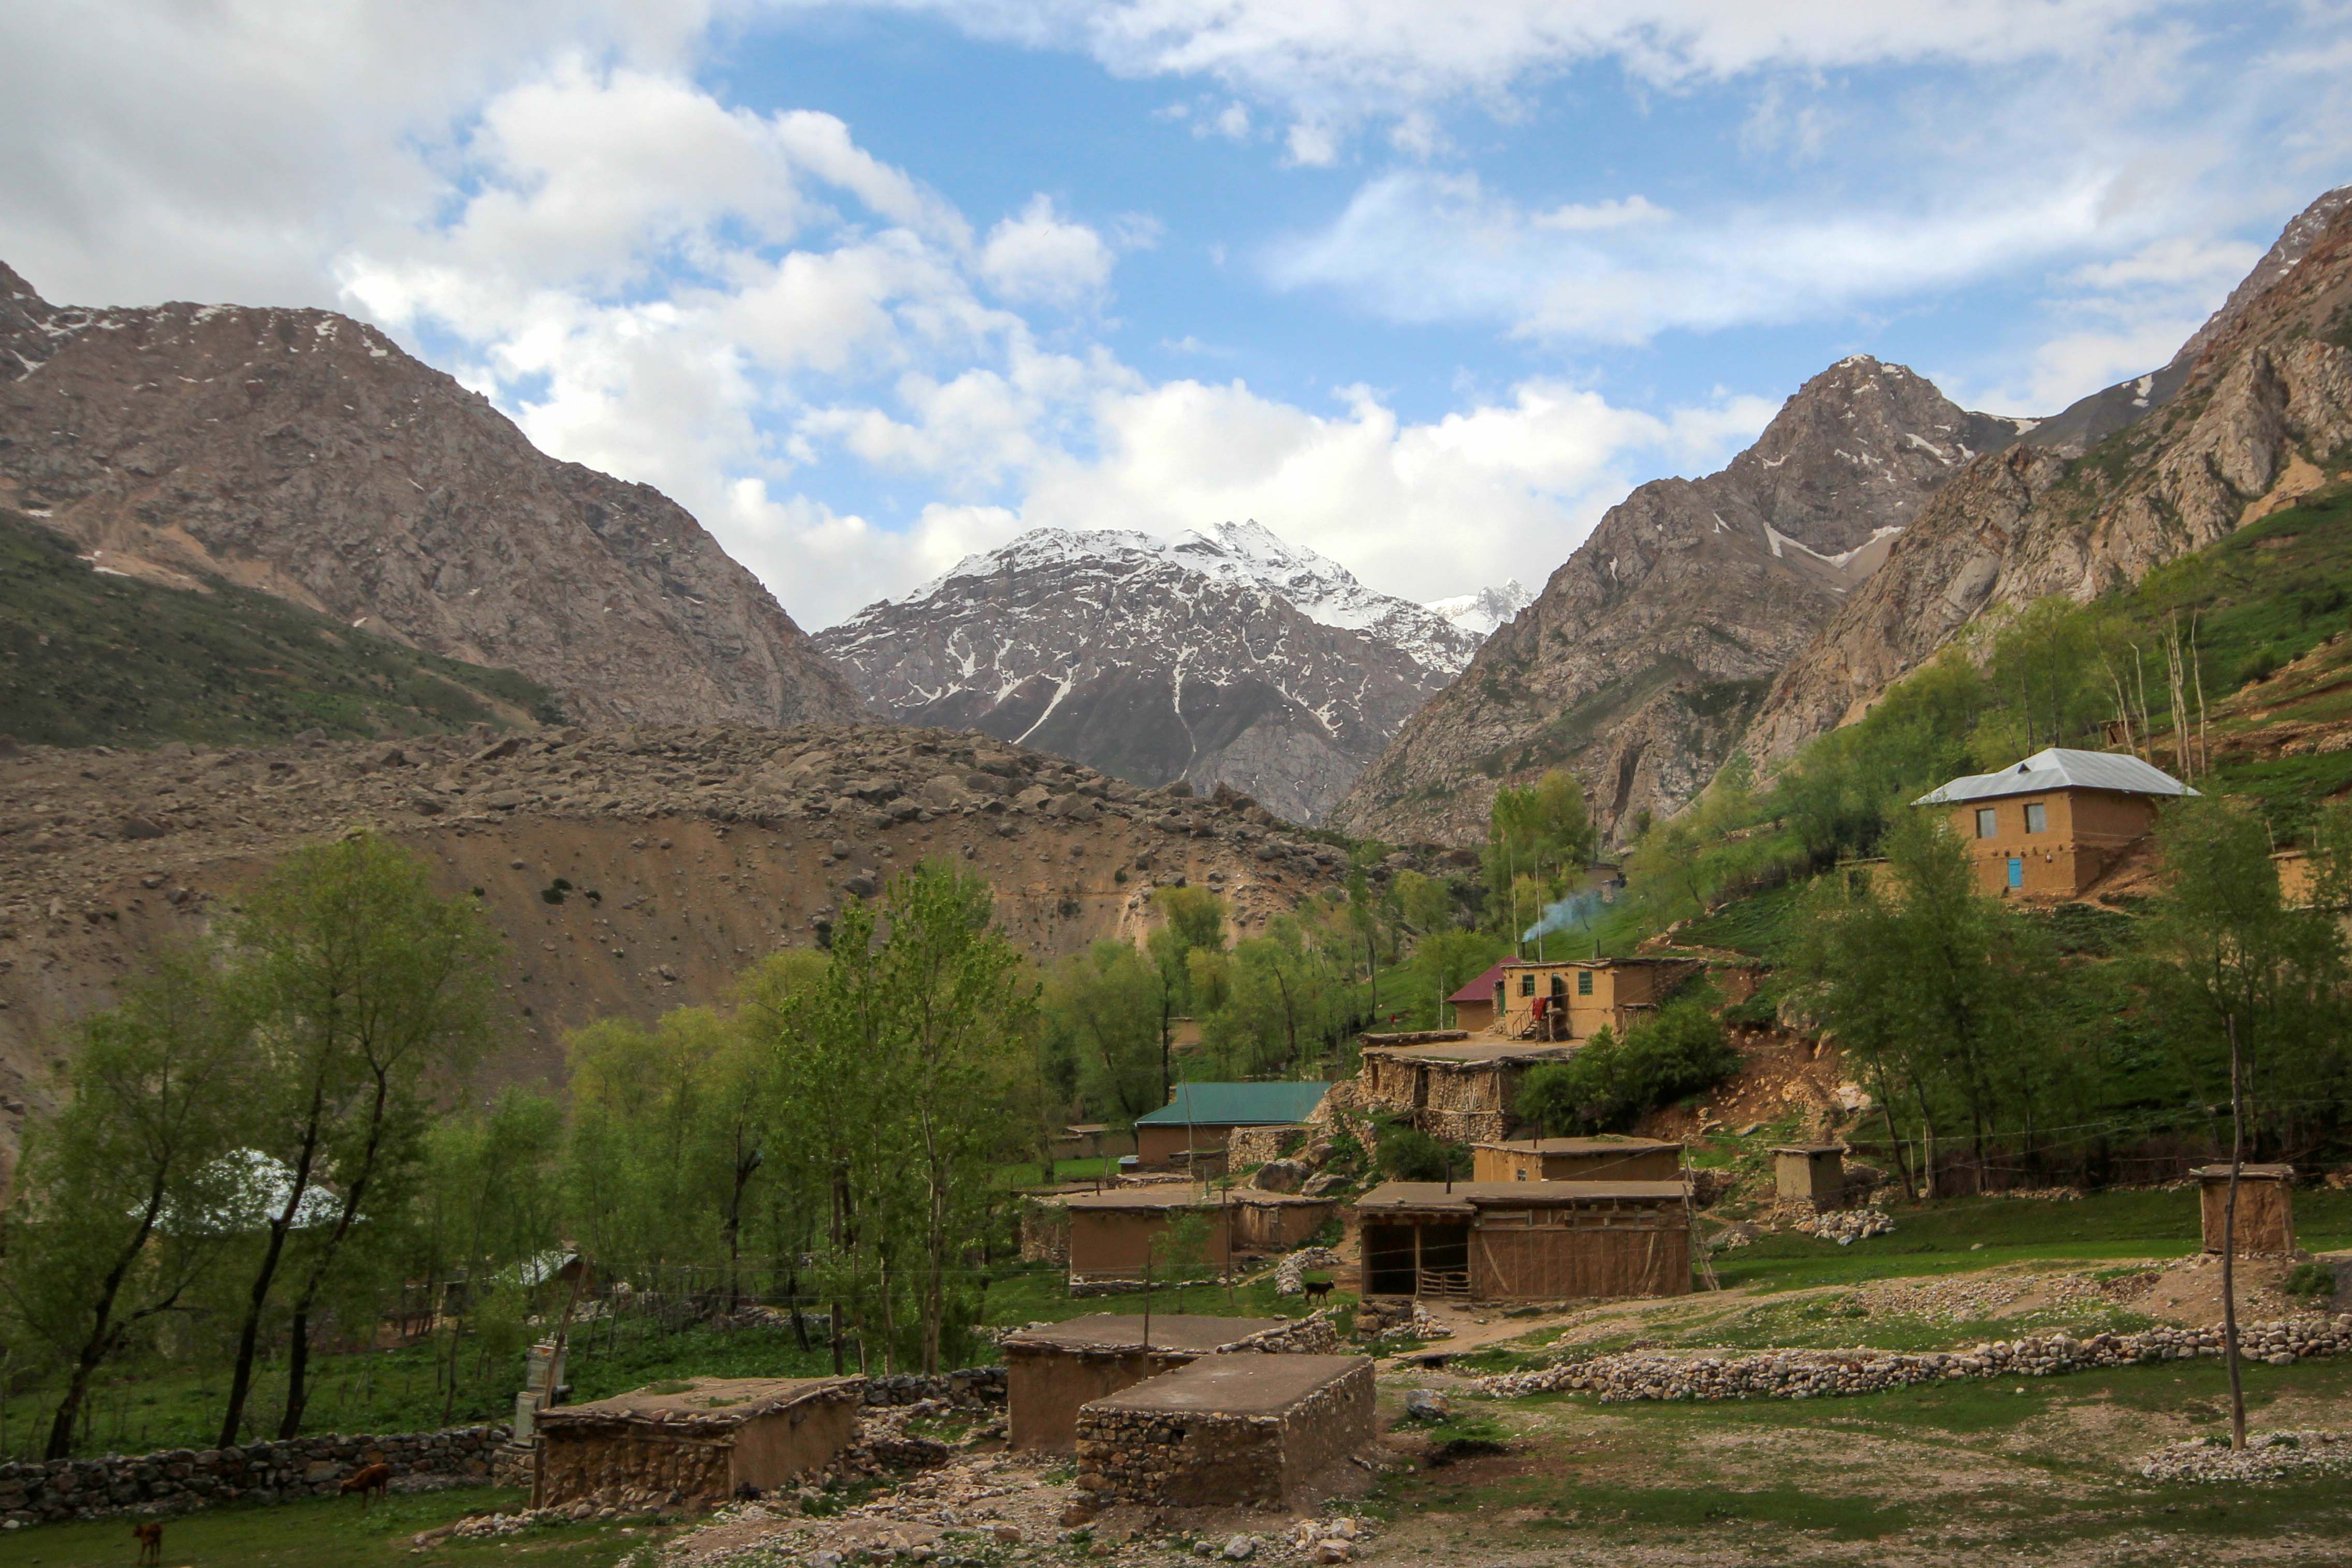 Marguzor Village in the Haft Kul valley of Tajikistan